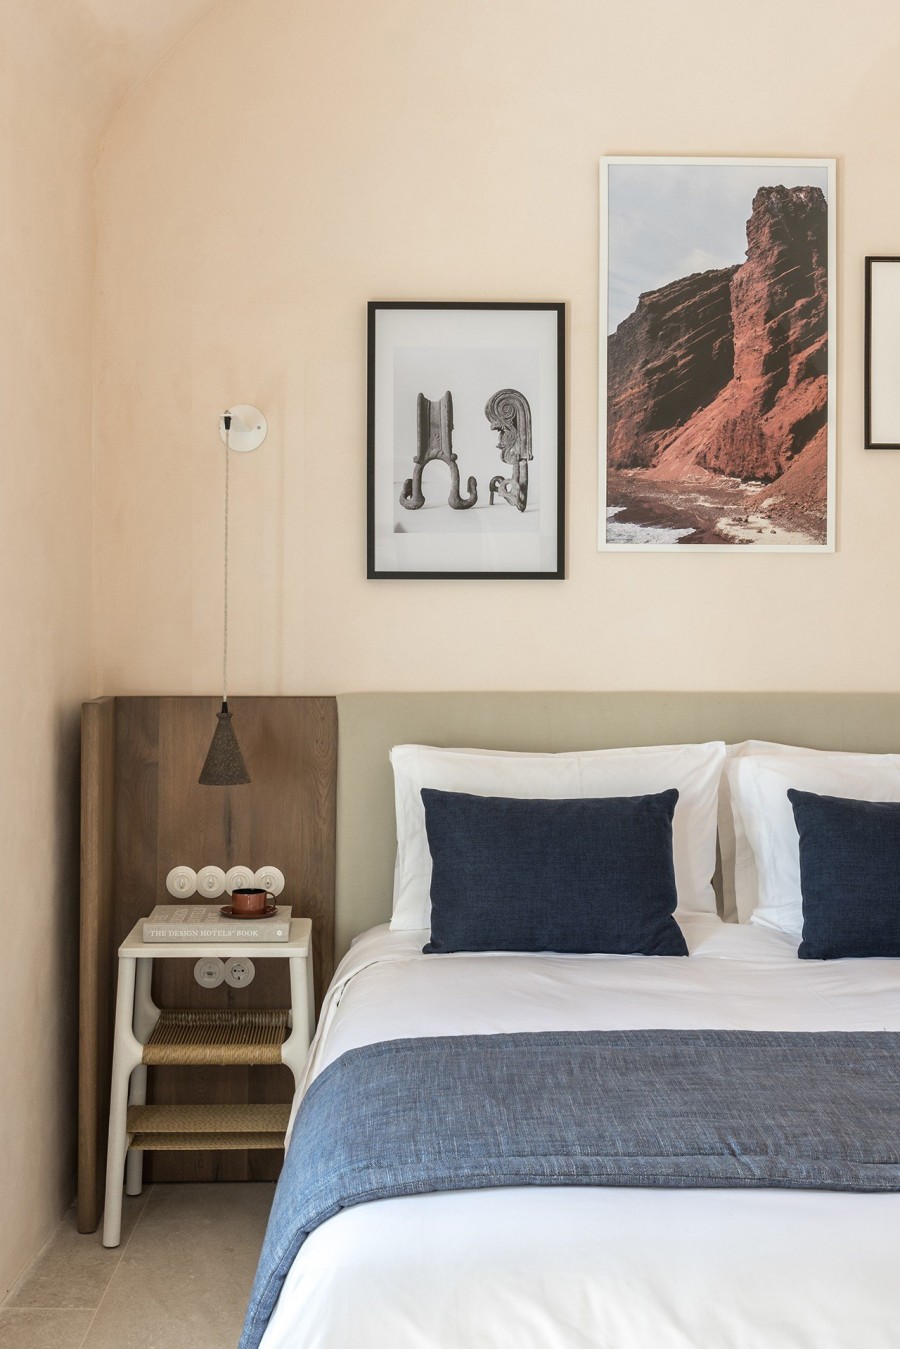 Οι αληθινές ιστορίες ανθρώπων εμπνέουν το νέο Ιstoria hotel στη Σαντορίνη- Φωτογραφία 13